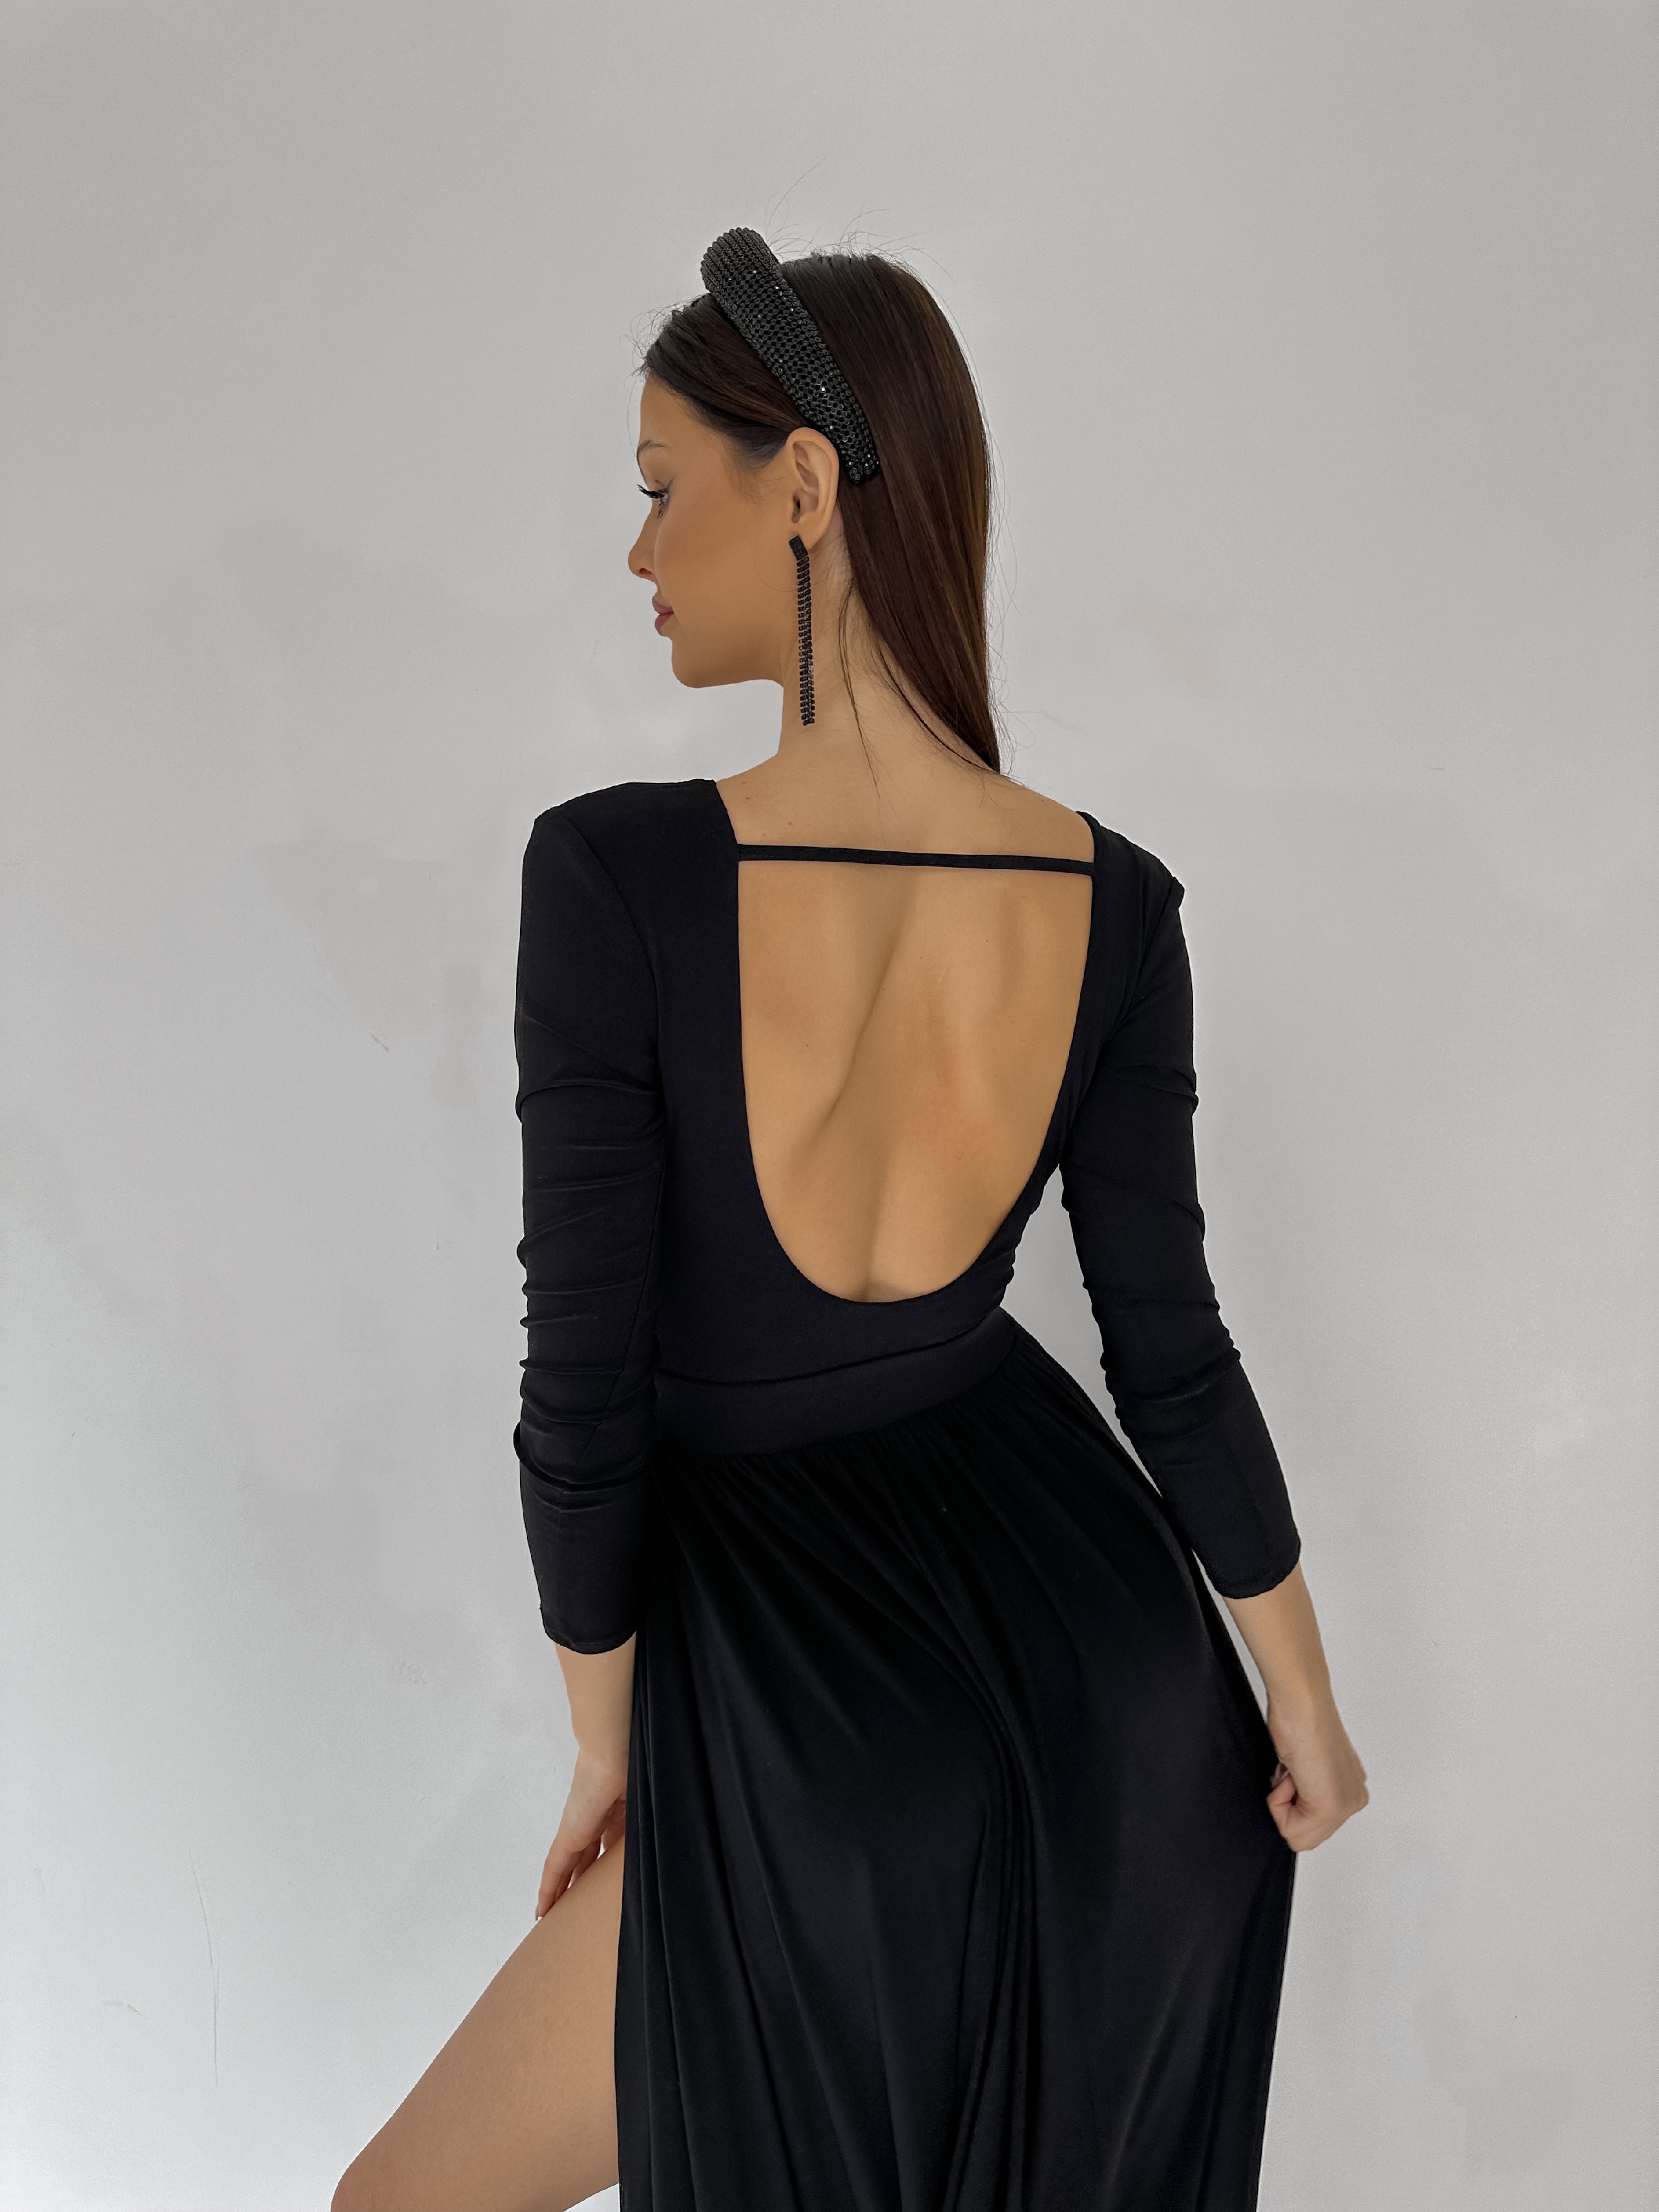 Šaty EMILY dlouhé černé VELIKOST: UNI(XS-M)